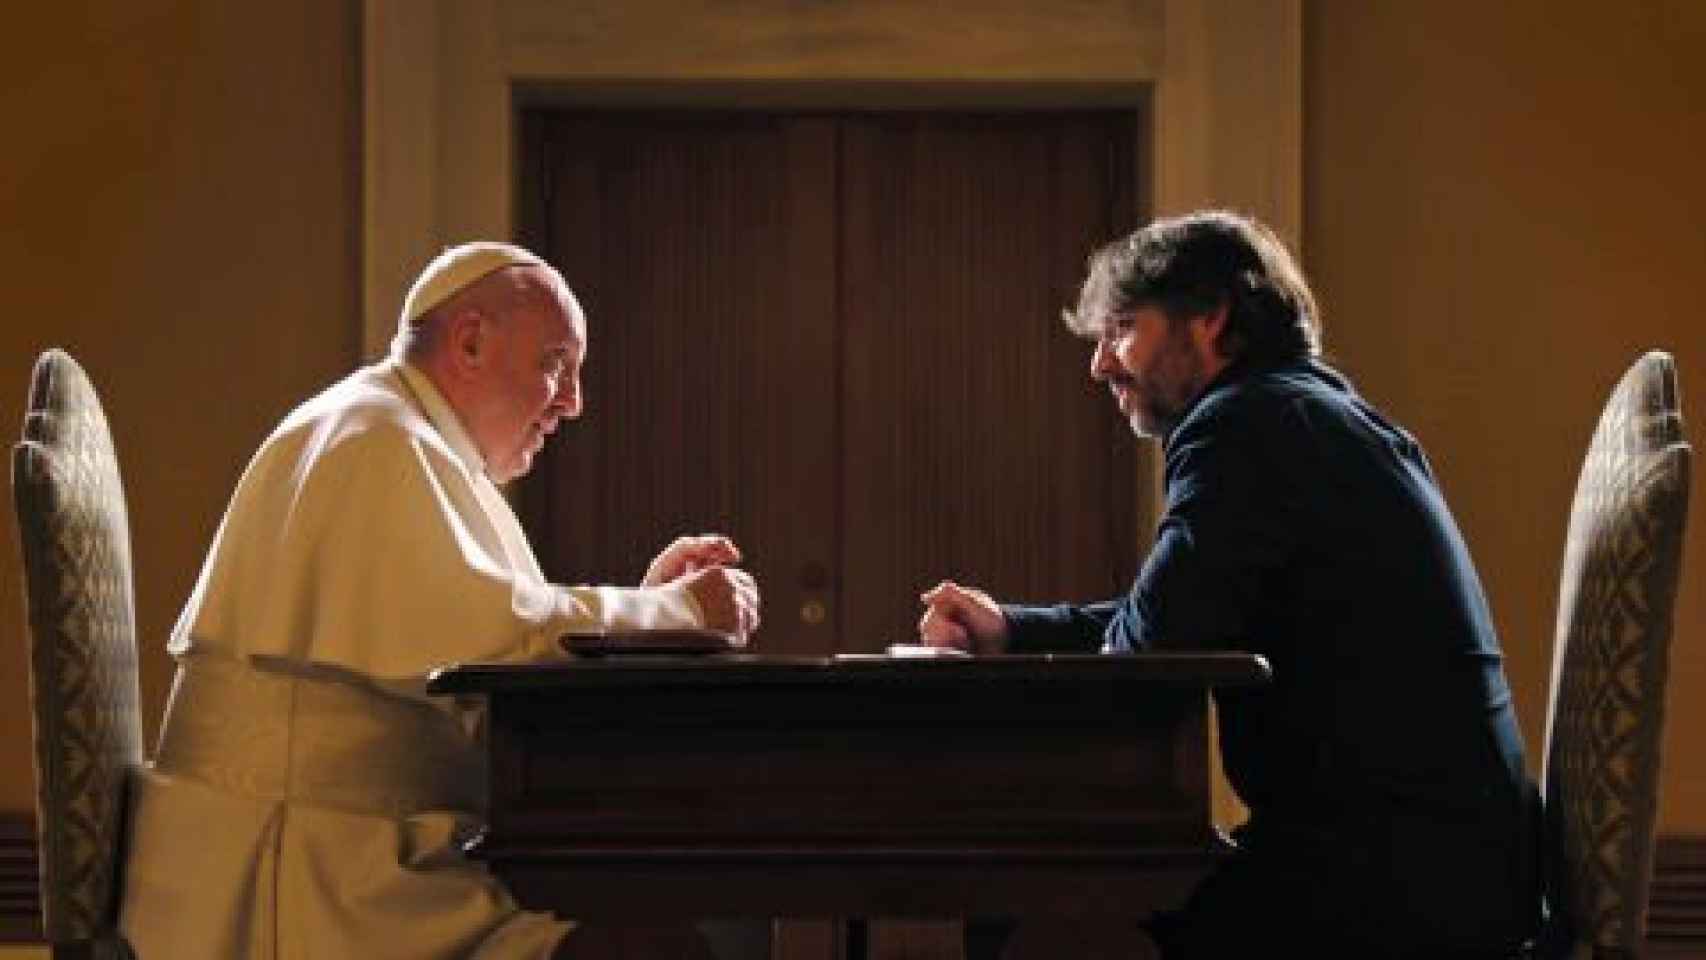 Audiencias: 'Salvados' arrasa con la entrevista al Papa Francisco